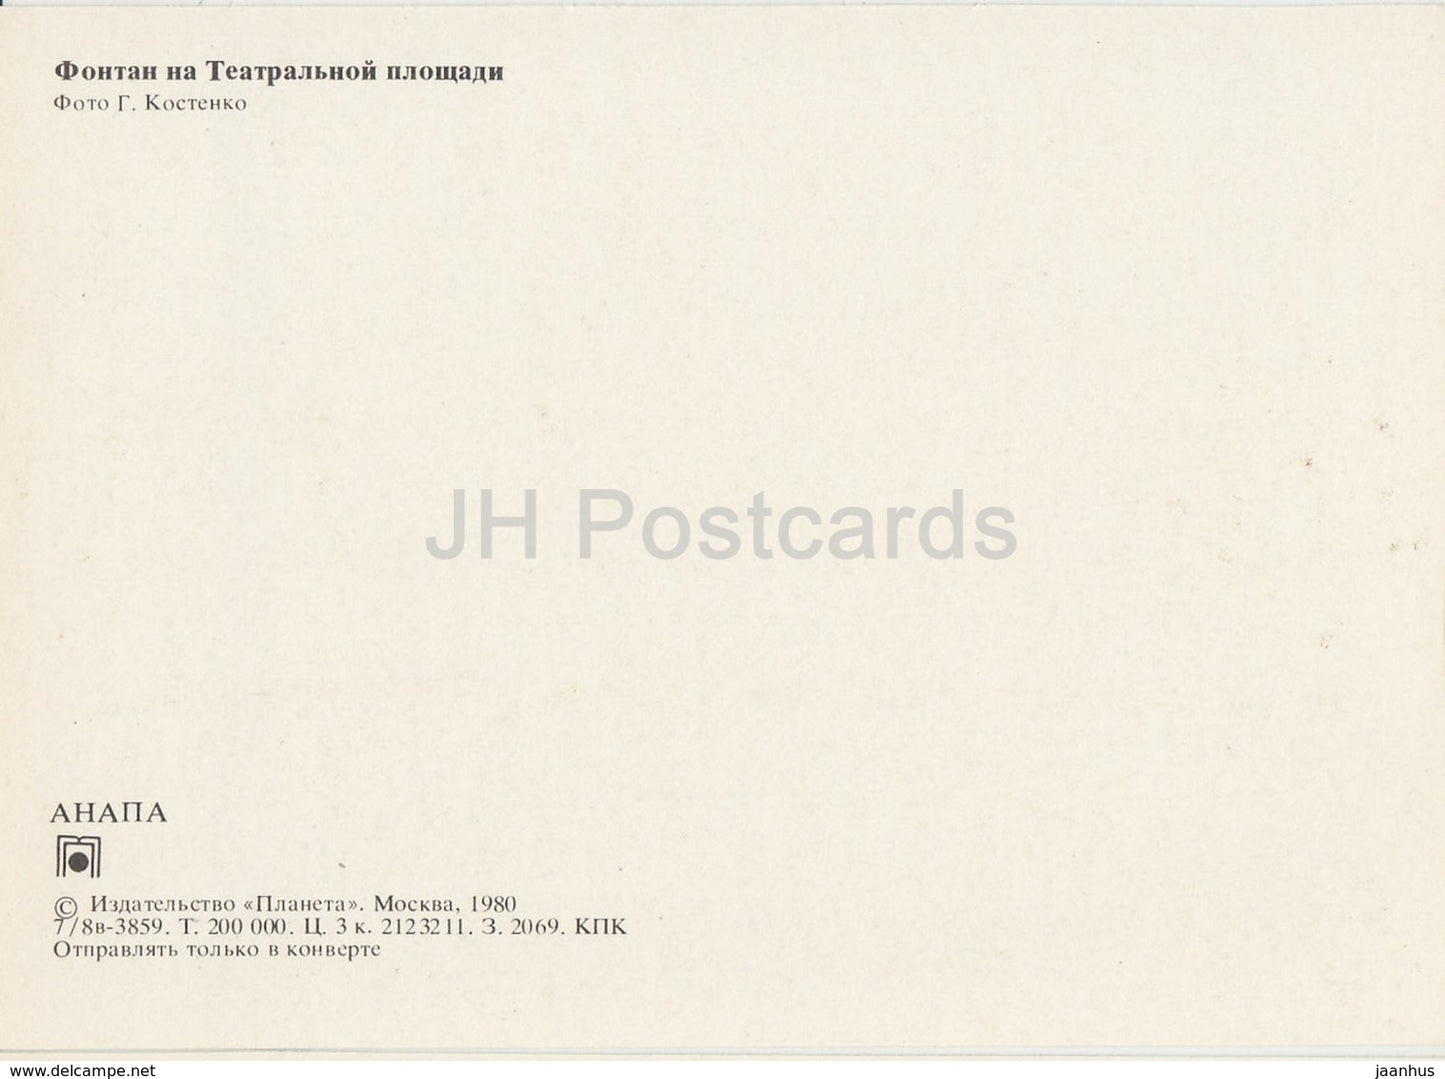 Anapa - Theatre Square - fountain - children - 1980 - Russia USSR - unused - JH Postcards